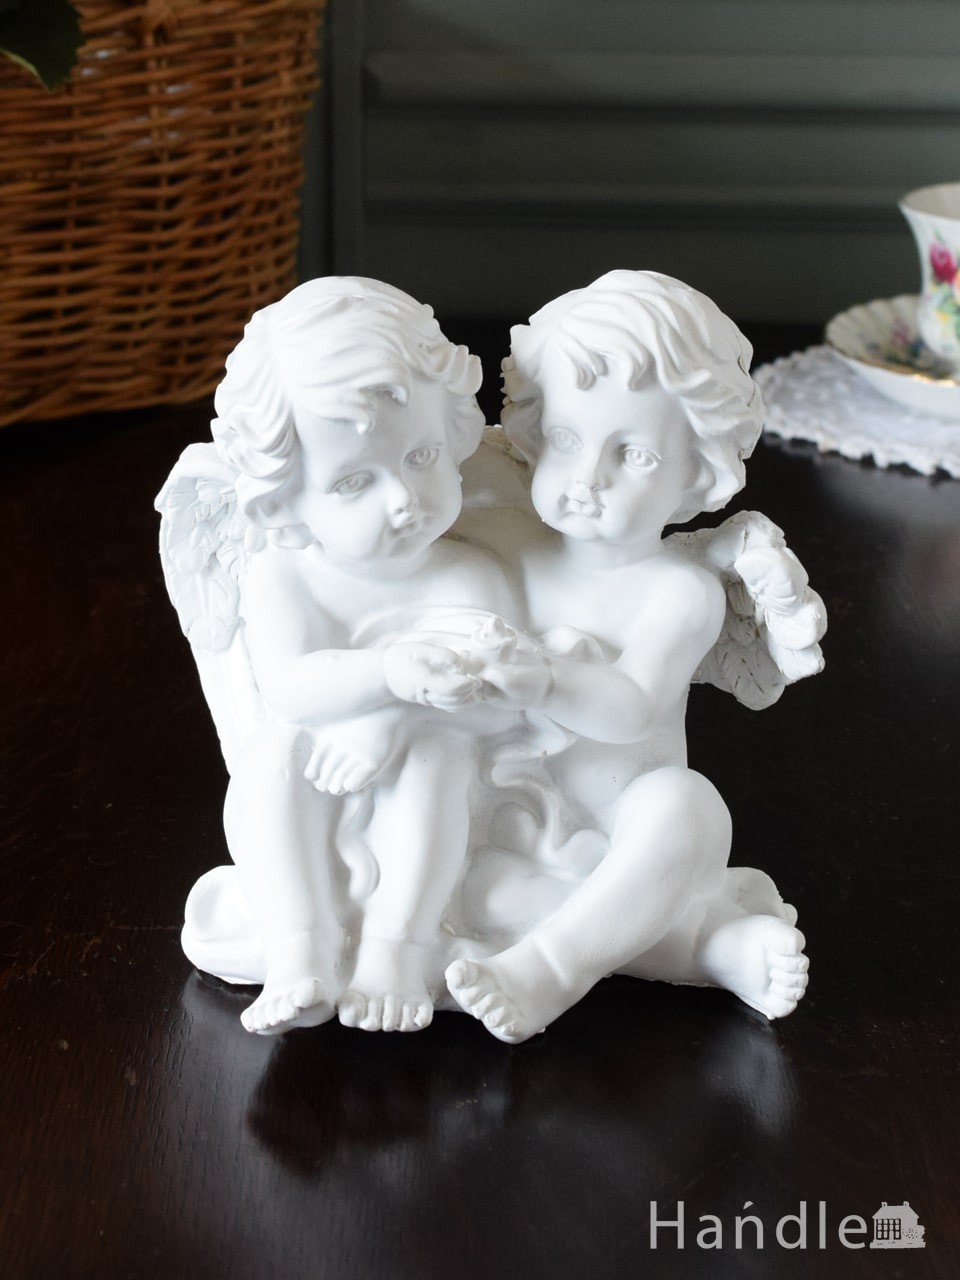 アンティーク風の可愛いディスプレイ雑貨、2人の天使がお話をしている姿が可愛いオブジェ (n20-289)